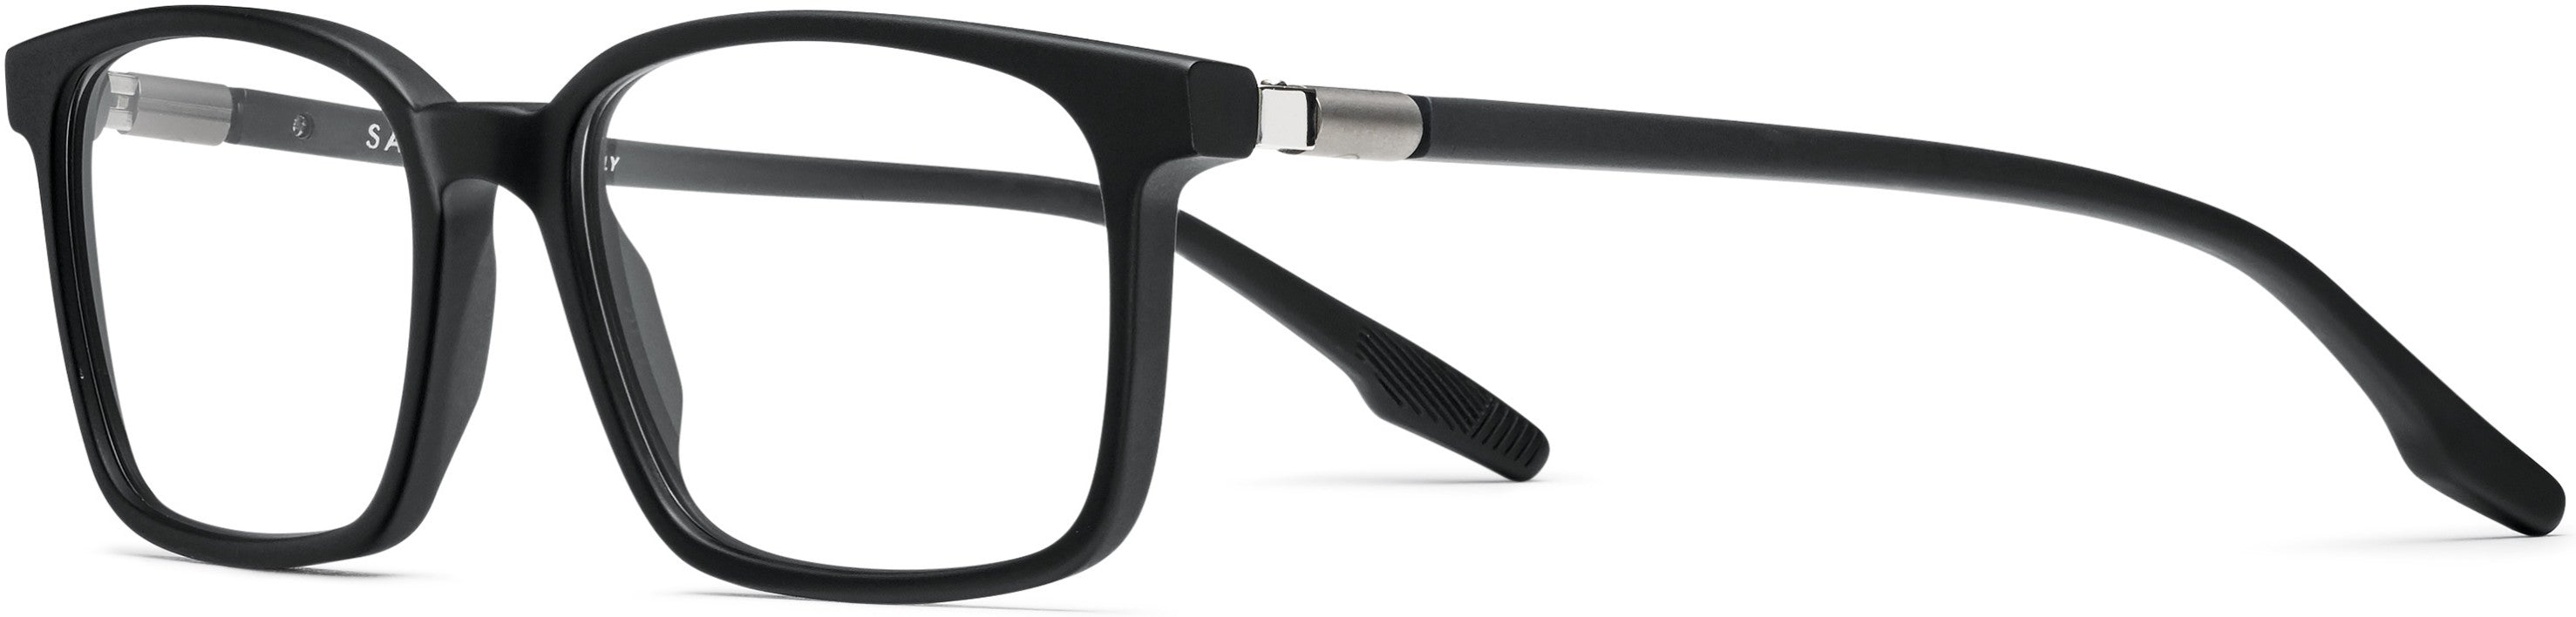 Safilo 2.0 Lastra 03 Rectangular Eyeglasses 0003-0003  Matte Black (00 Demo Lens)